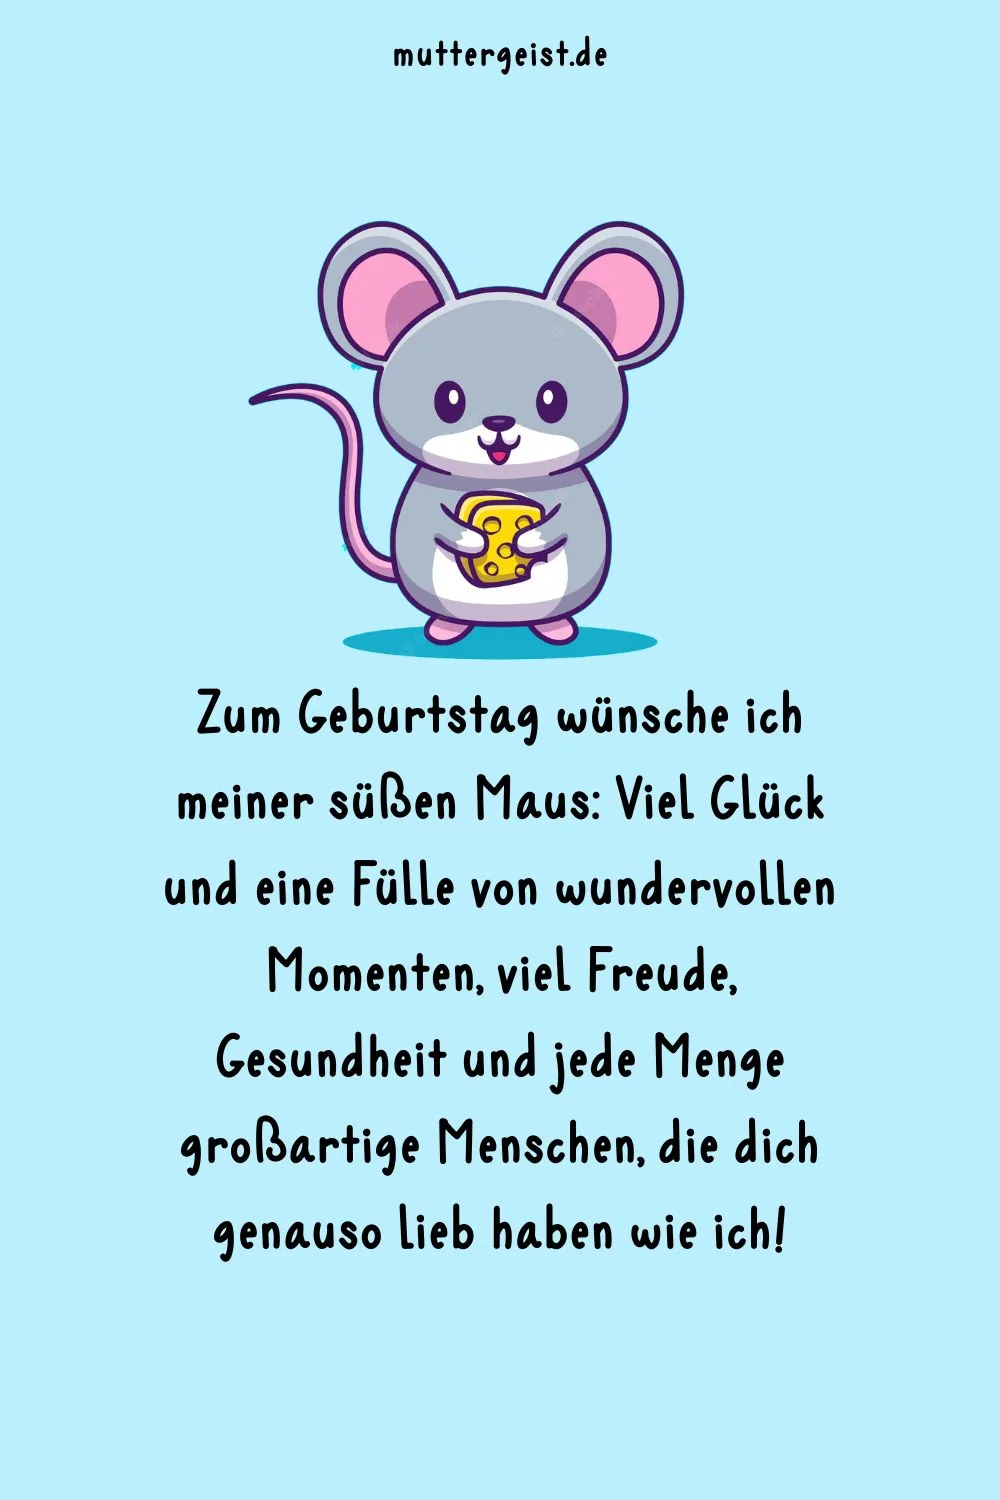 Geburtstagskarte mit einer Maus